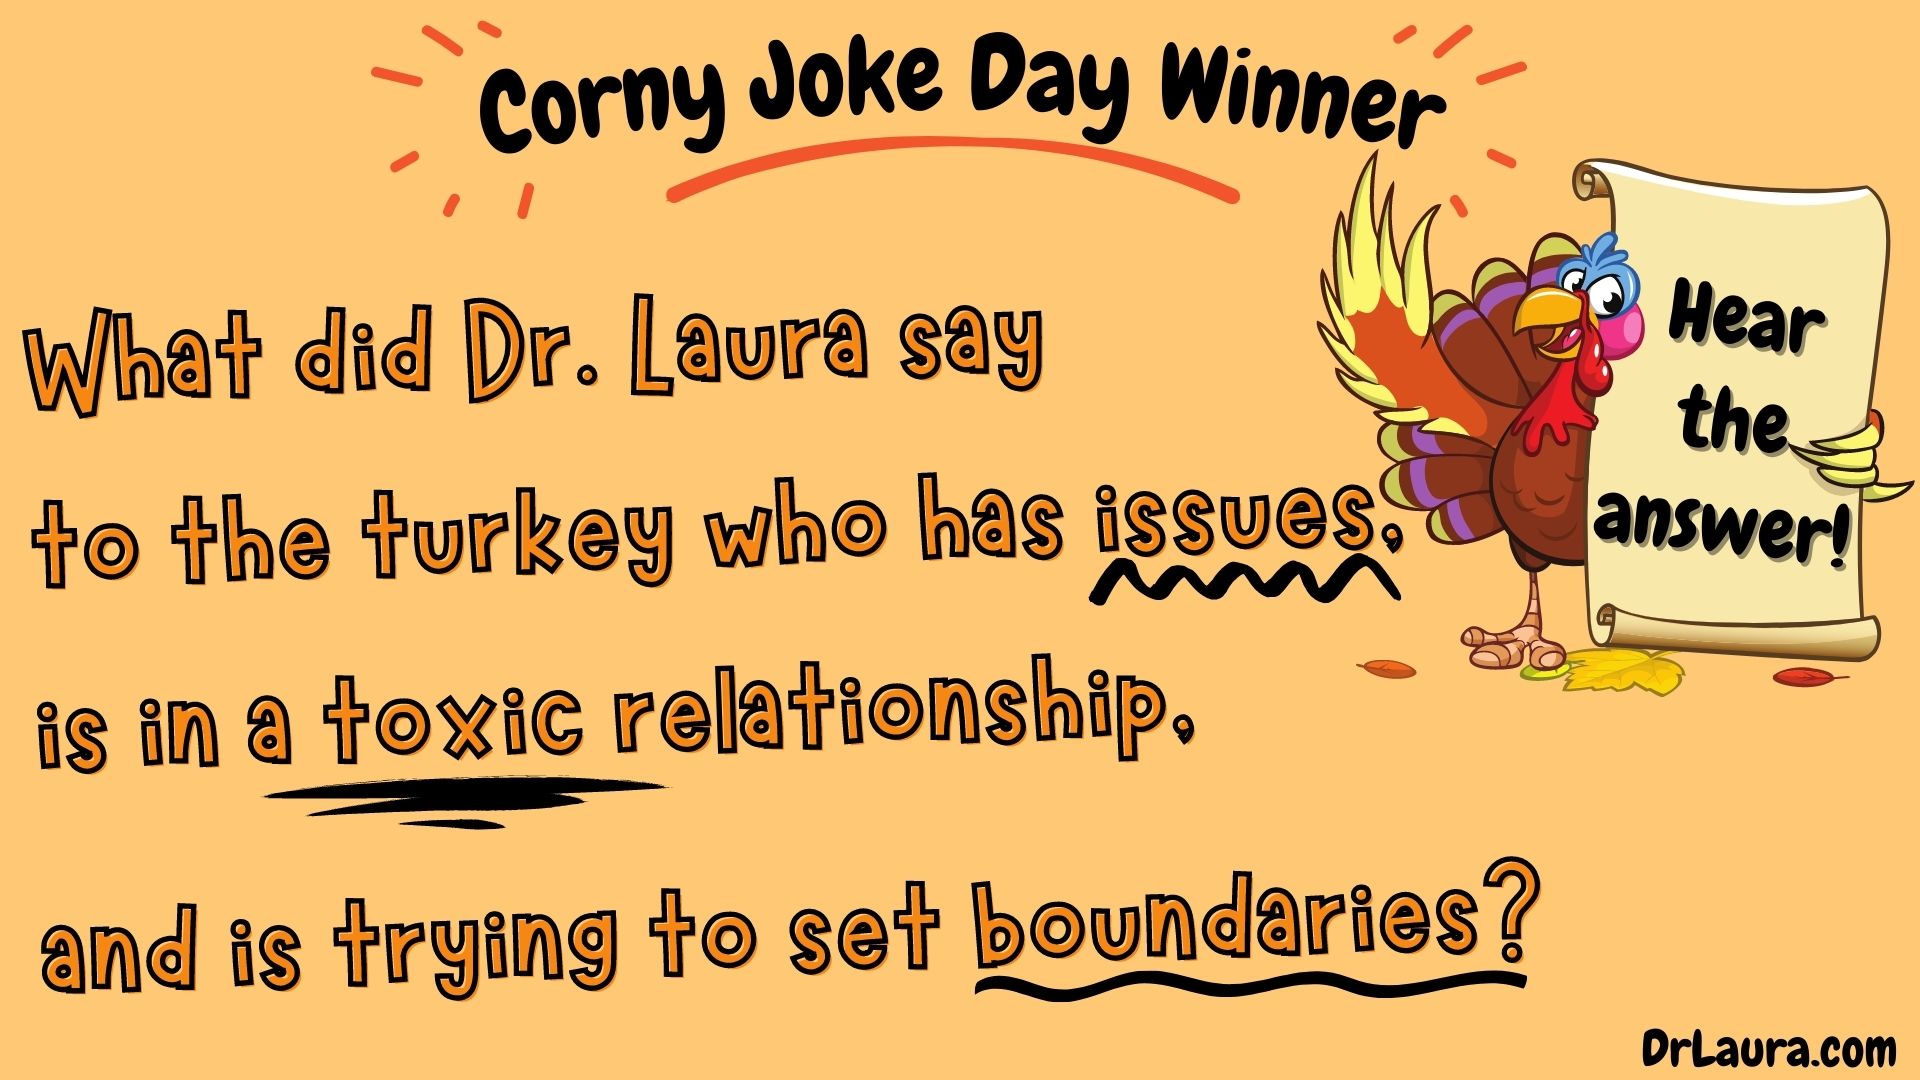 YouTube: Corny Joke Day Winner 2020